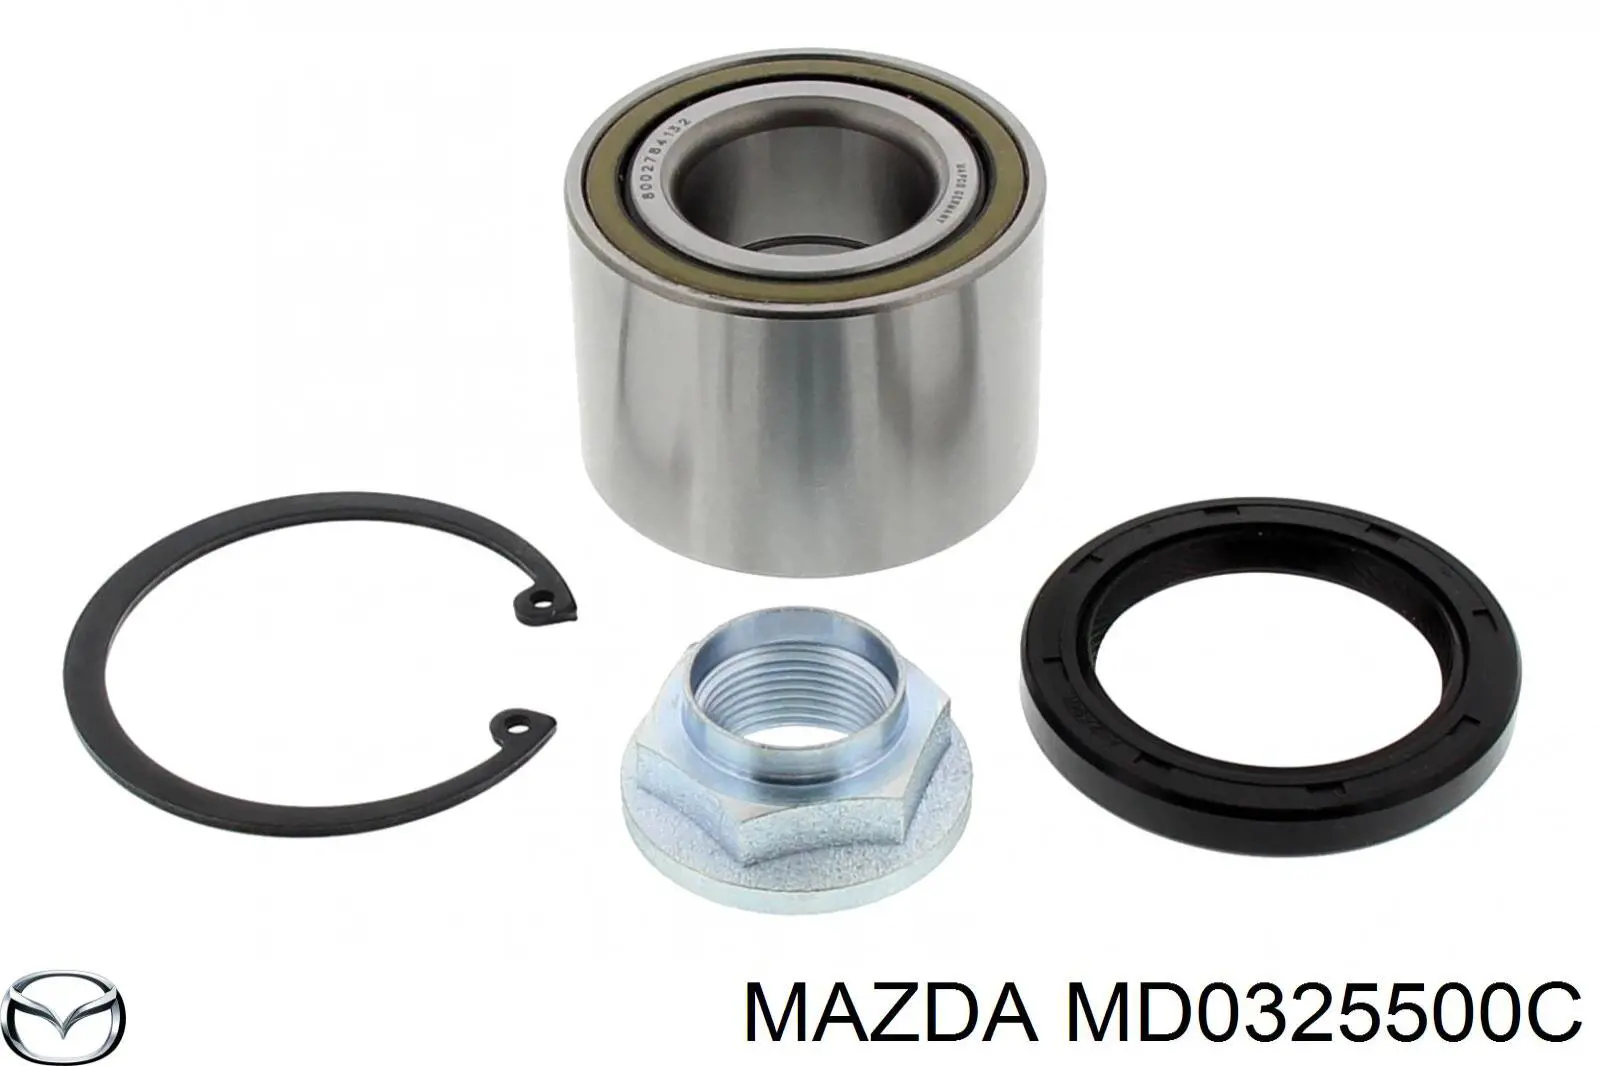 MD0325500C Mazda